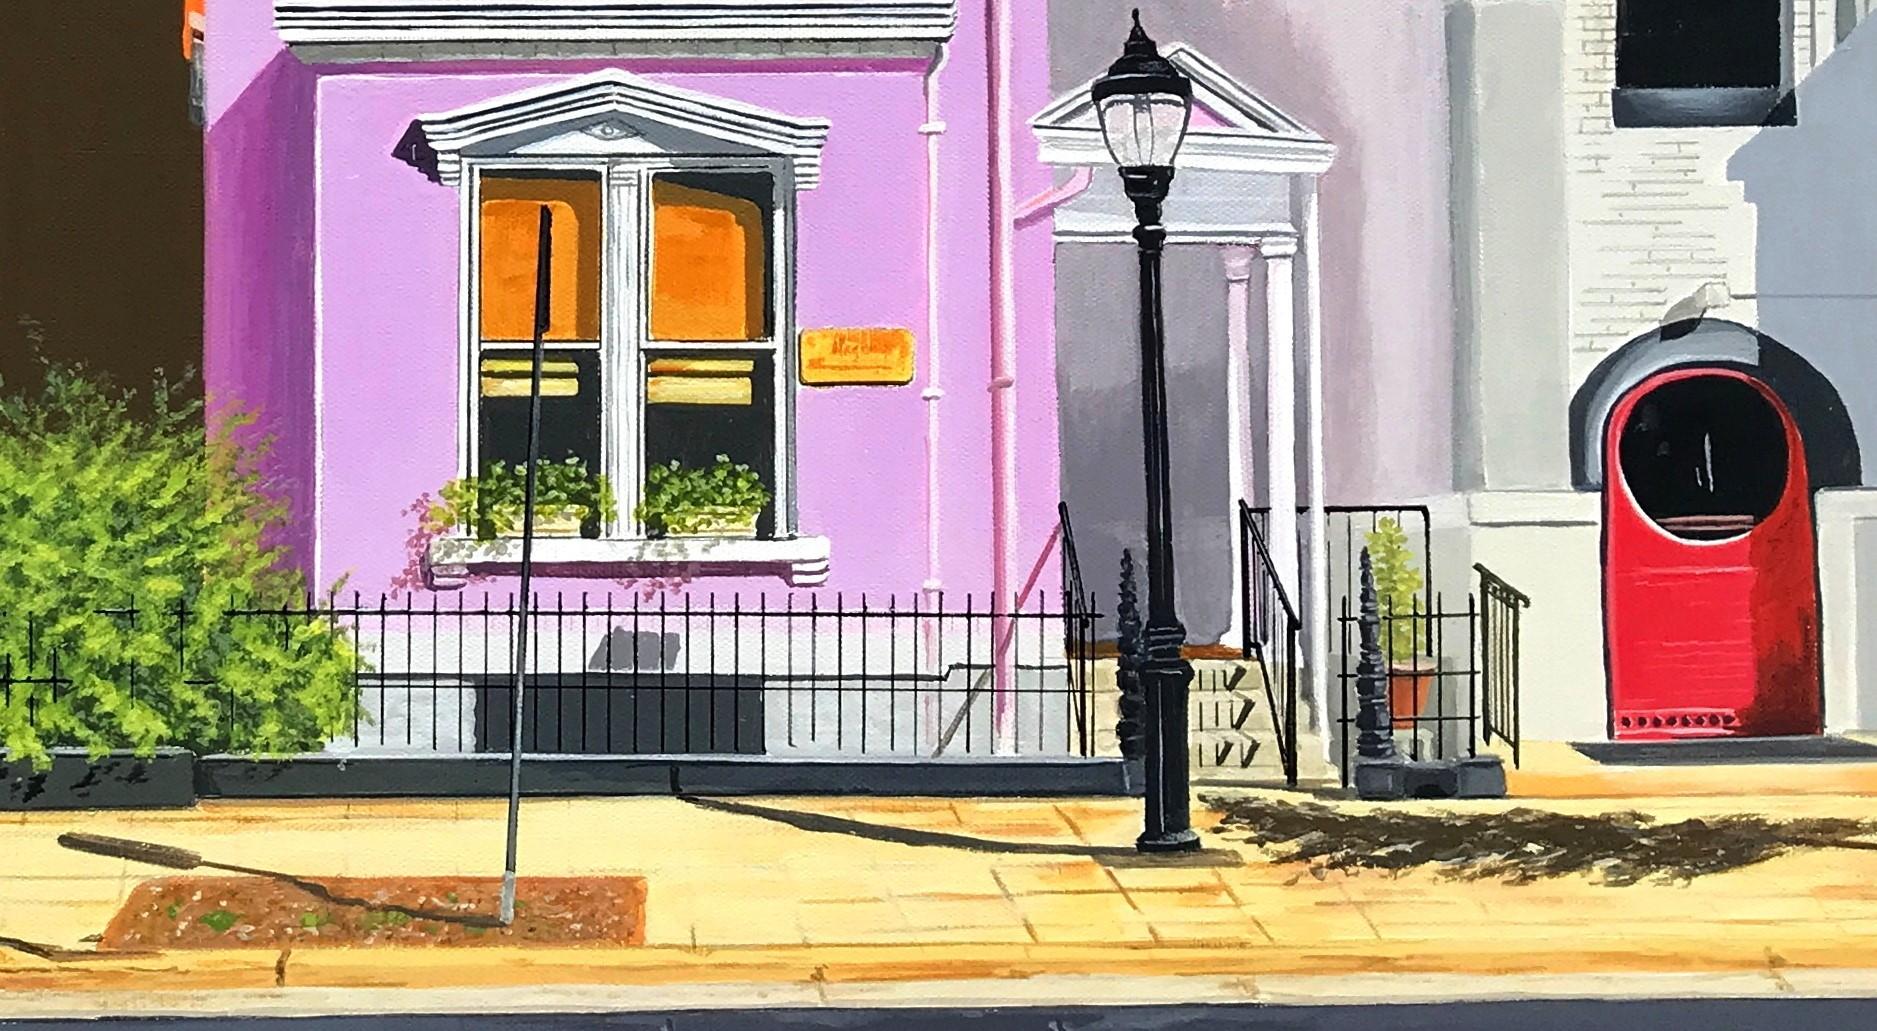 <p>Kommentare des Künstlers<br>Farbenfrohe Gebäude säumen die Main Street in Covington, Kentucky. Eine fängt die Mittagssonne ein und färbt die Ziegelsteine in einen warmen Farbton. Ein anderes erstrahlt in einem leuchtenden Violett mit eleganten